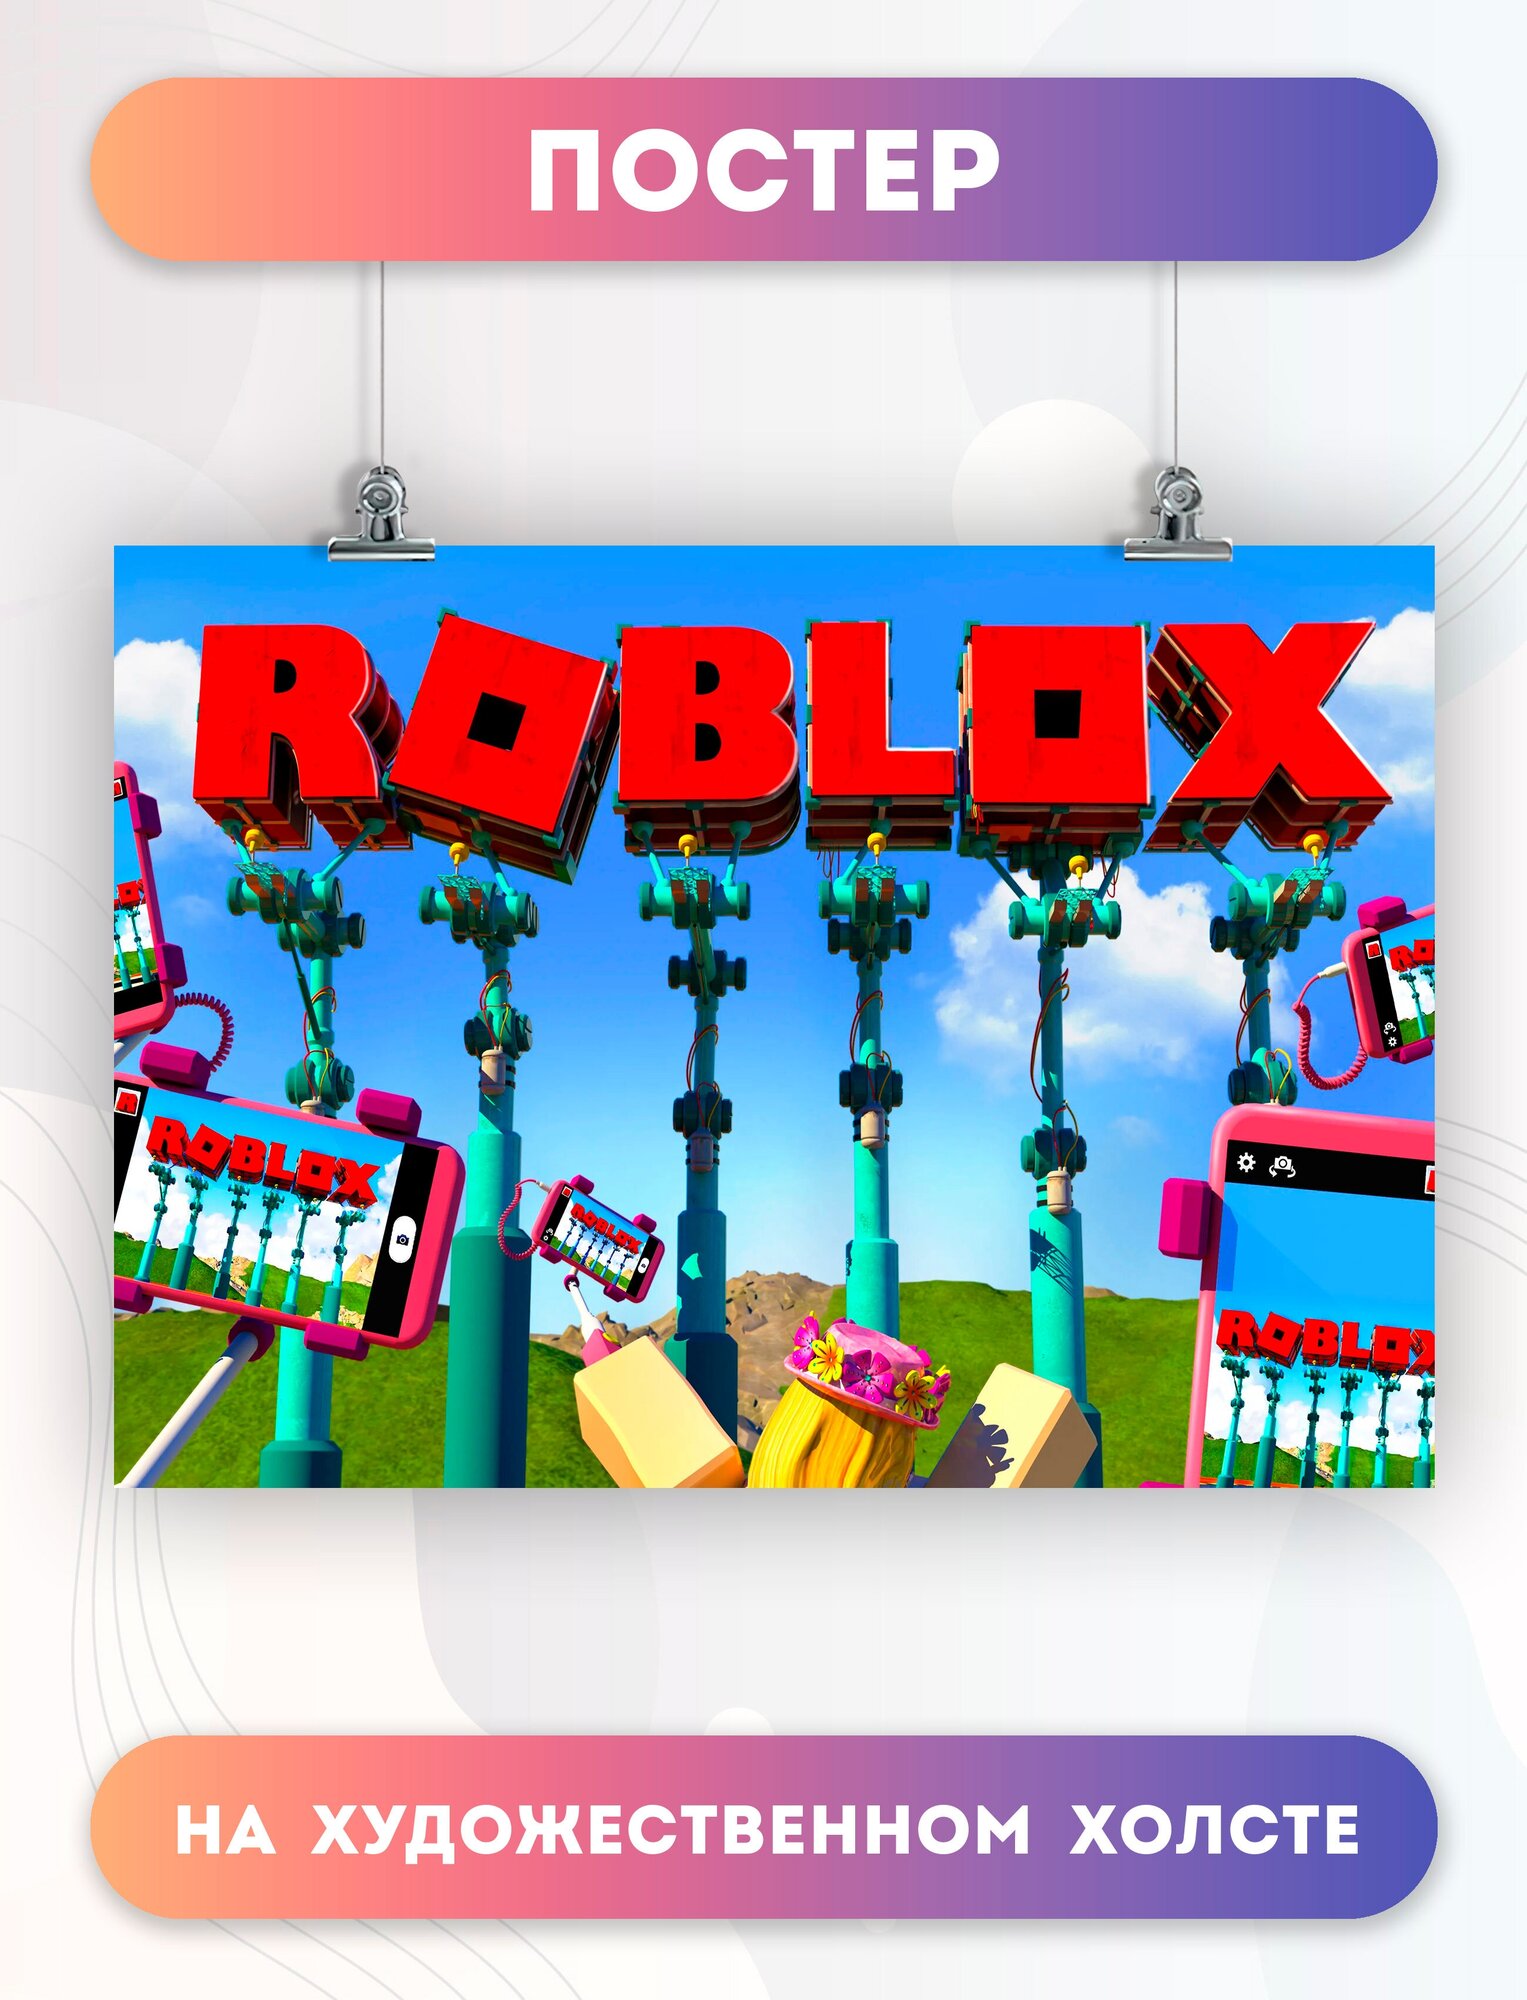 Постер на холсте Роблокс Roblox игра (4) 30х40 см